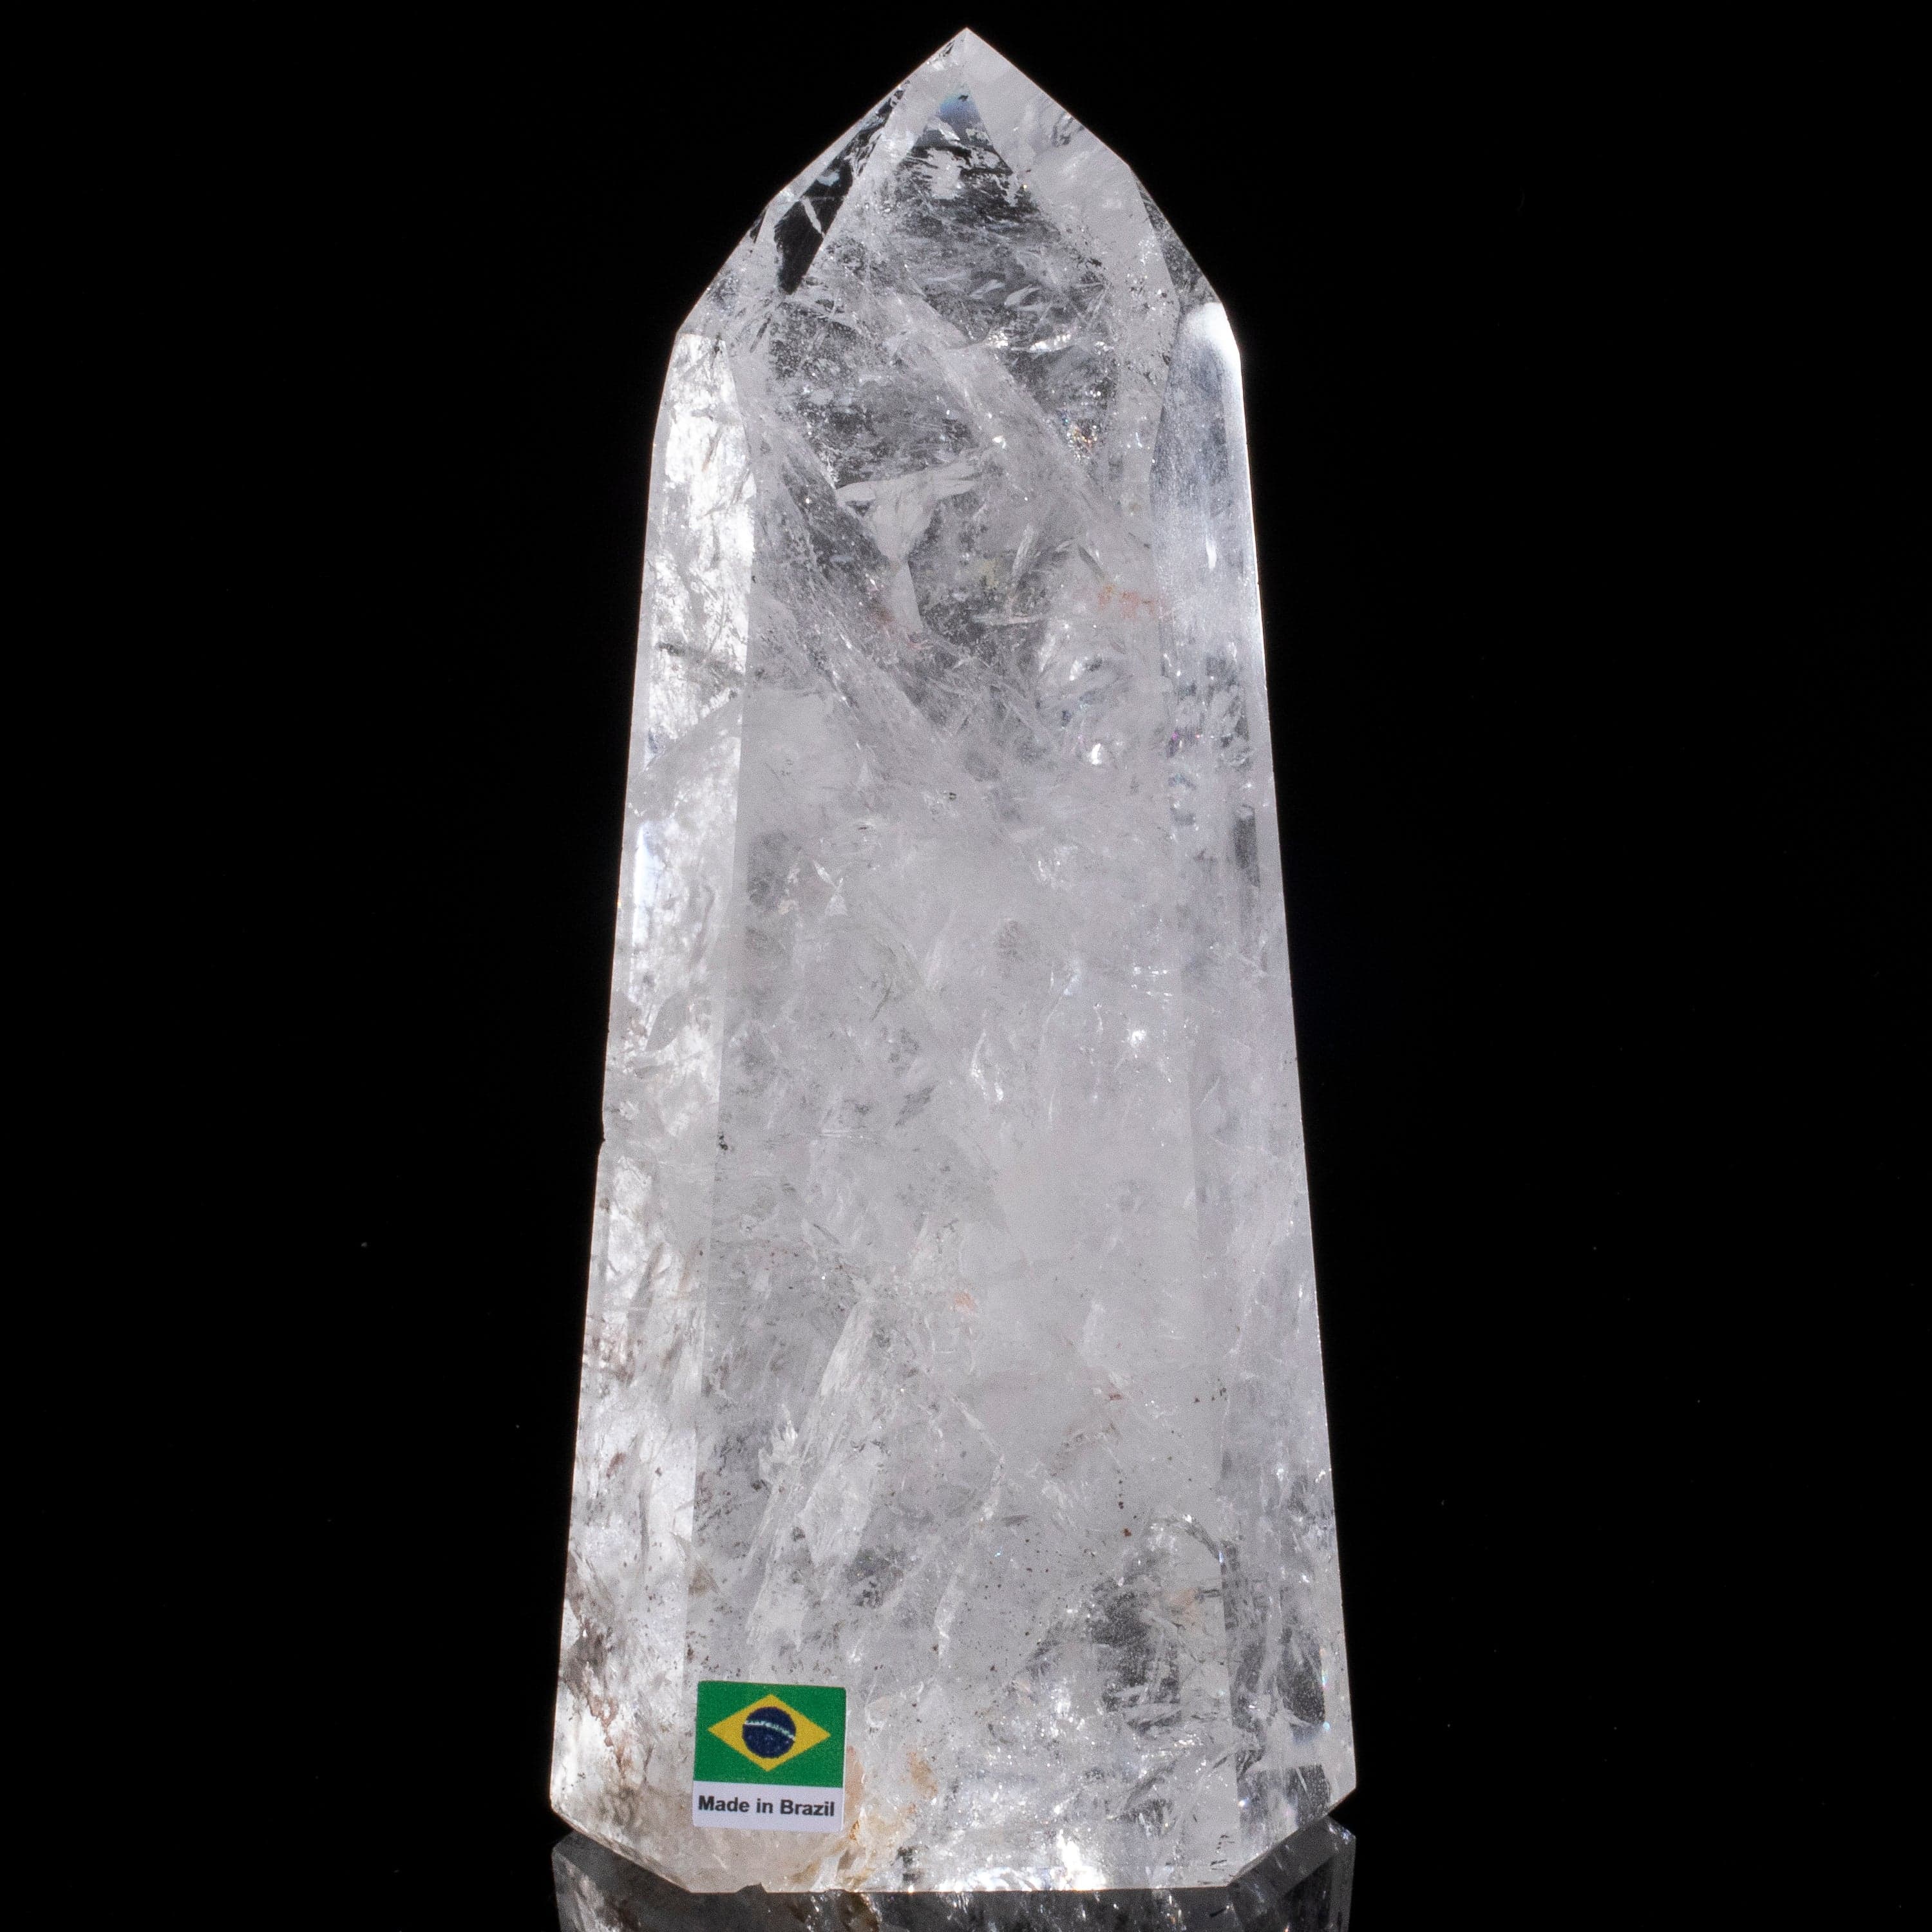 Kalifano Quartz Natural Quartz Obelisk from Brazil - 7.5" / 1,034 grams QZ1500.007